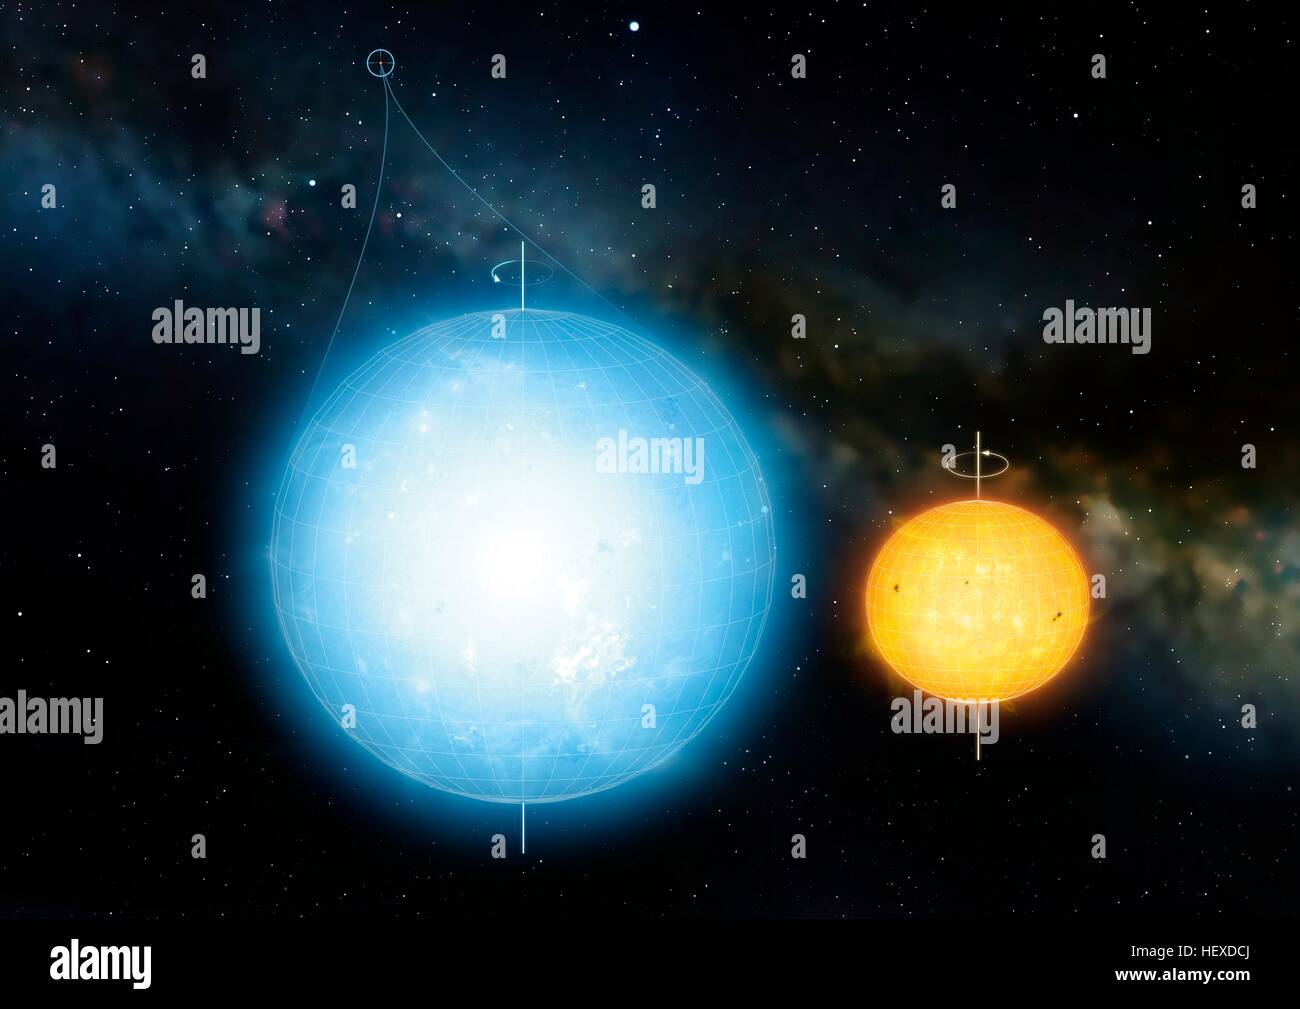 11145123 Kepler est roundest.corps astronomiques connus tous les corps astronomiques, y compris la terre soleil, ils sont légèrement aplatie aux pôles à l'équateur renflement en raison de leur spin.Toutefois,Kepler 11145123 a ces petit degré d'écrasement que les astronomes ont conclu que c'est plus proche de vrai que toute autre sphère Banque D'Images